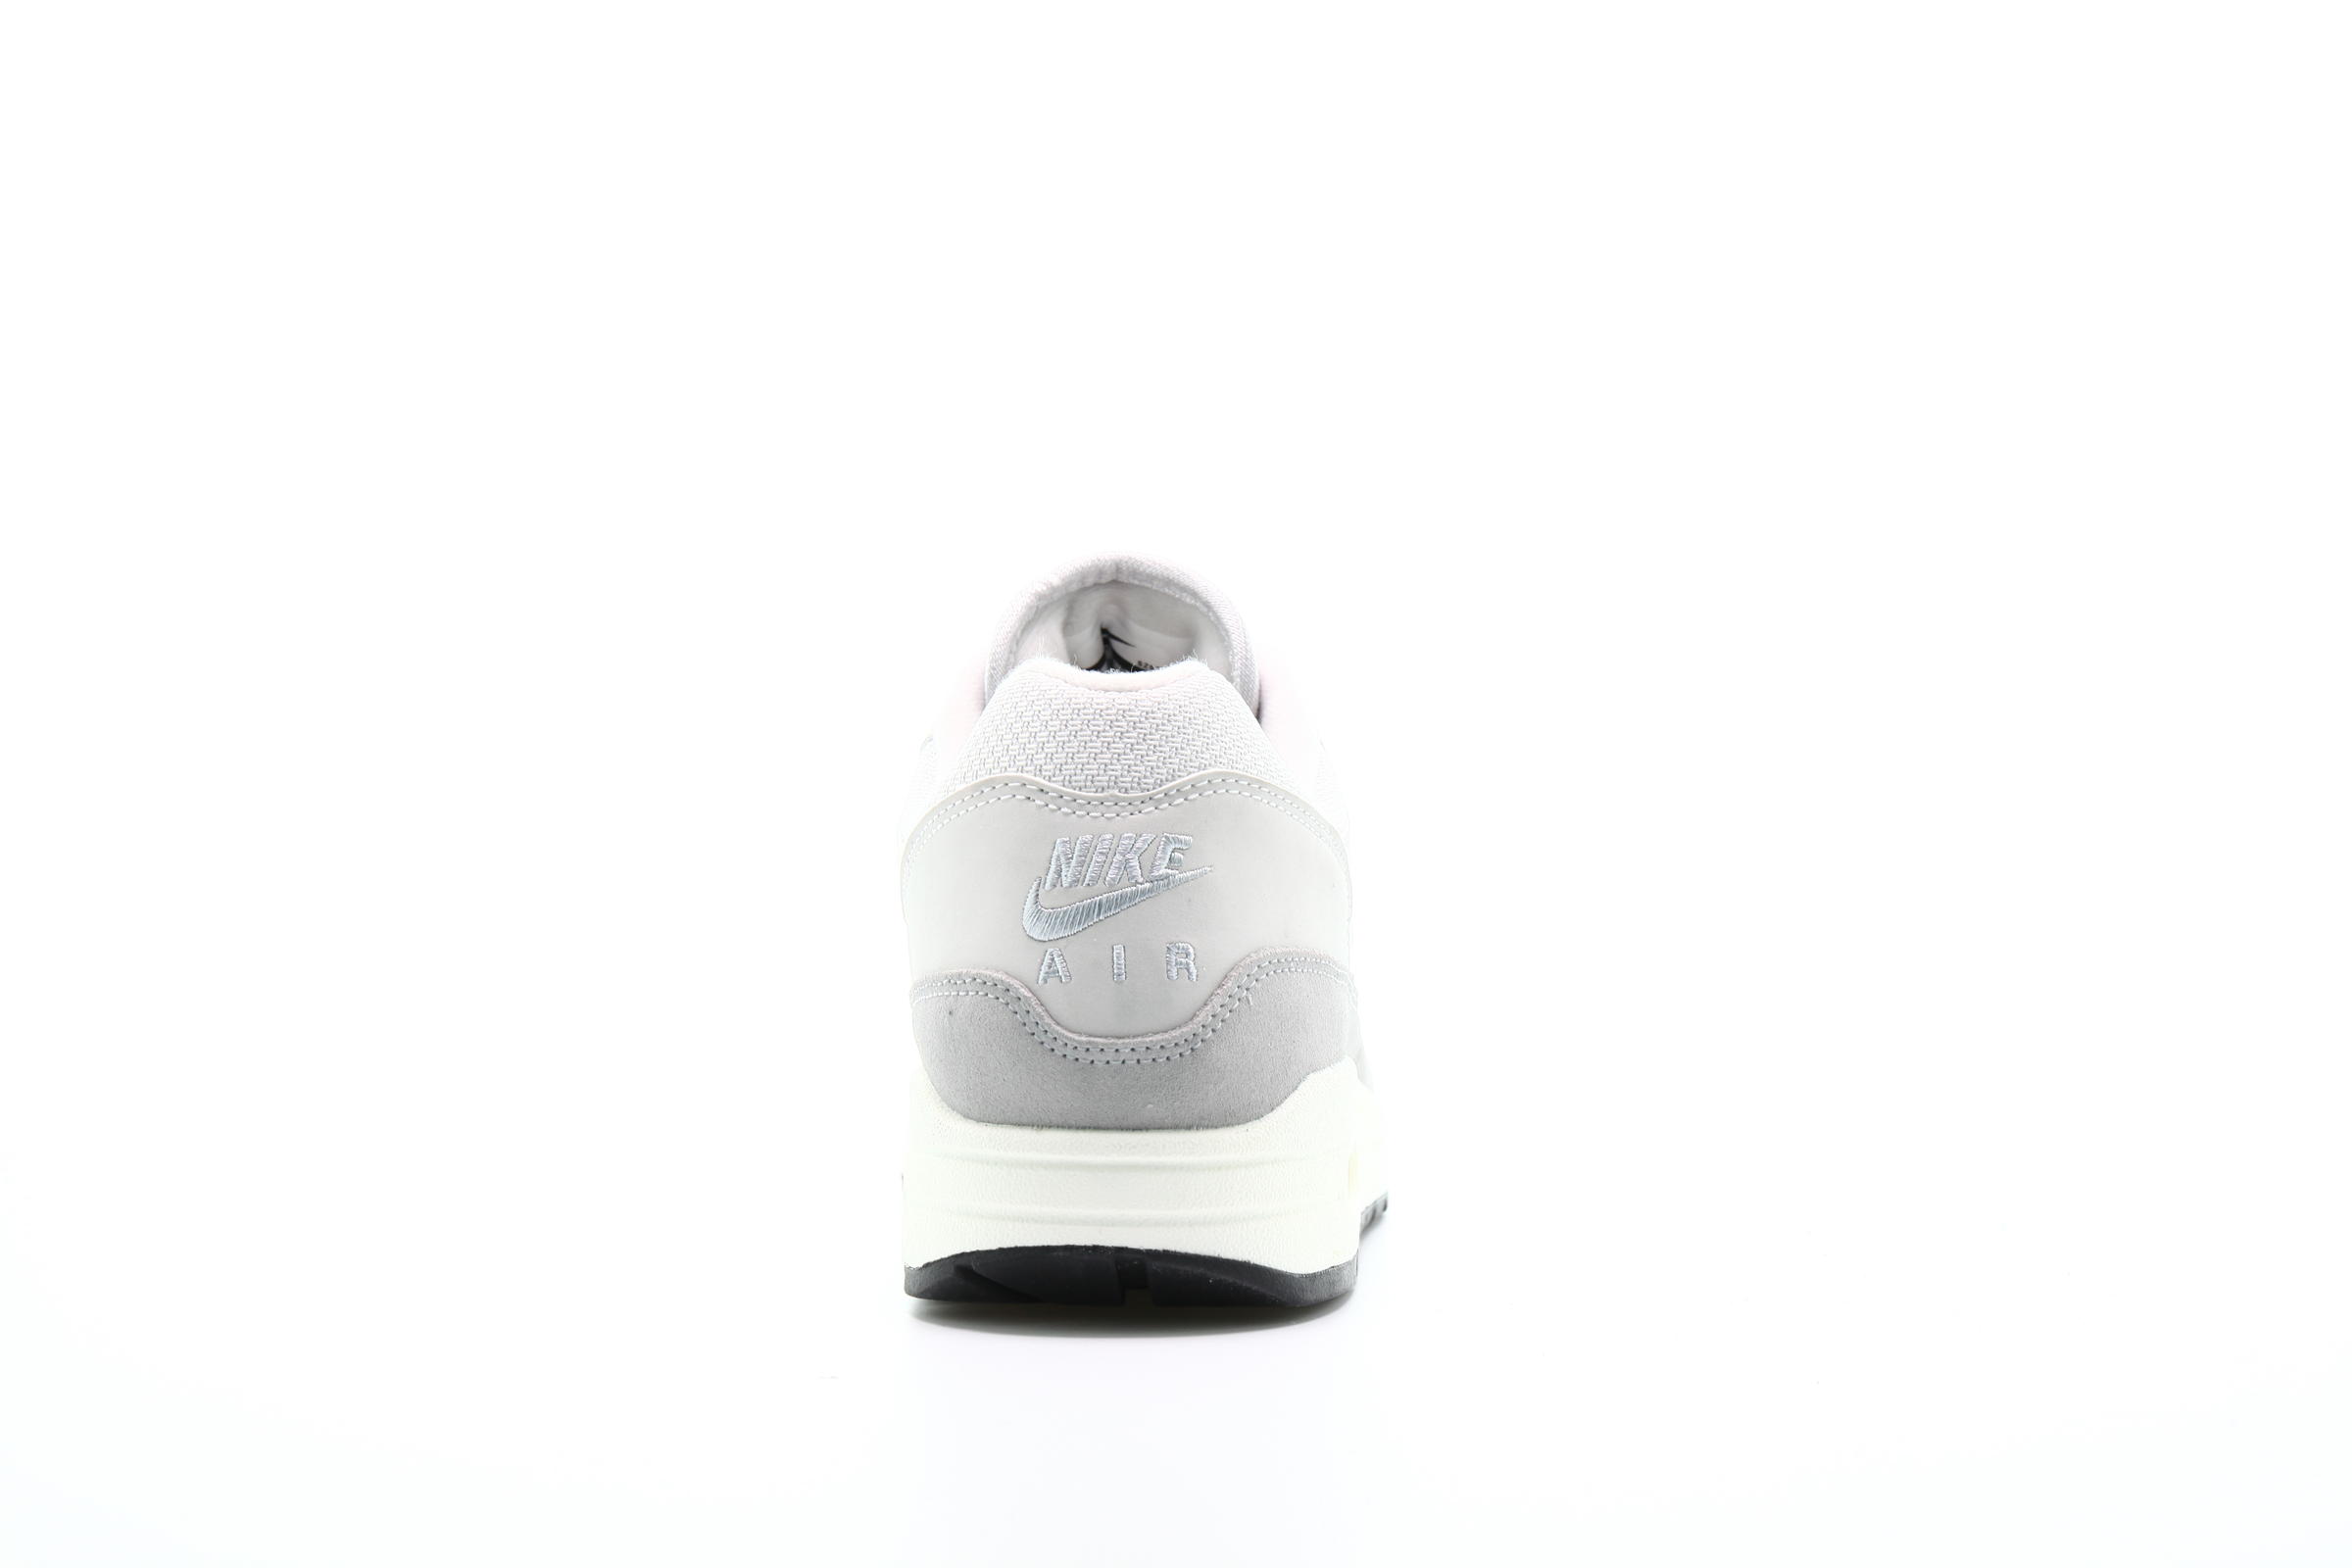 Nike Air Max 1 "Vast Grey"